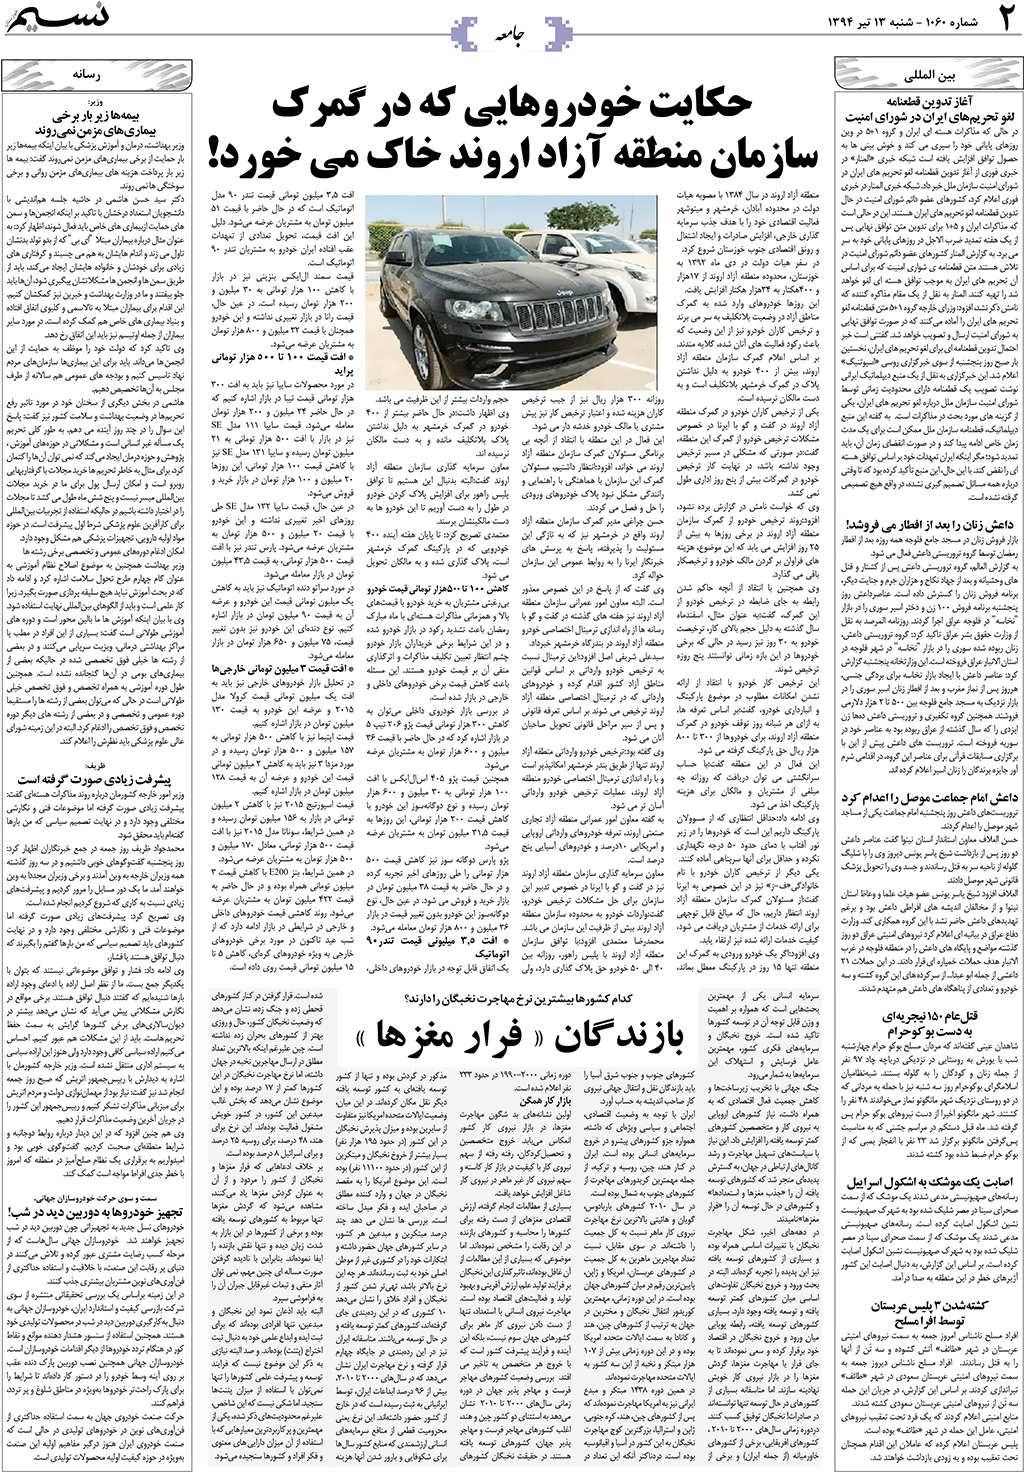 صفحه جامعه روزنامه نسیم شماره 1060